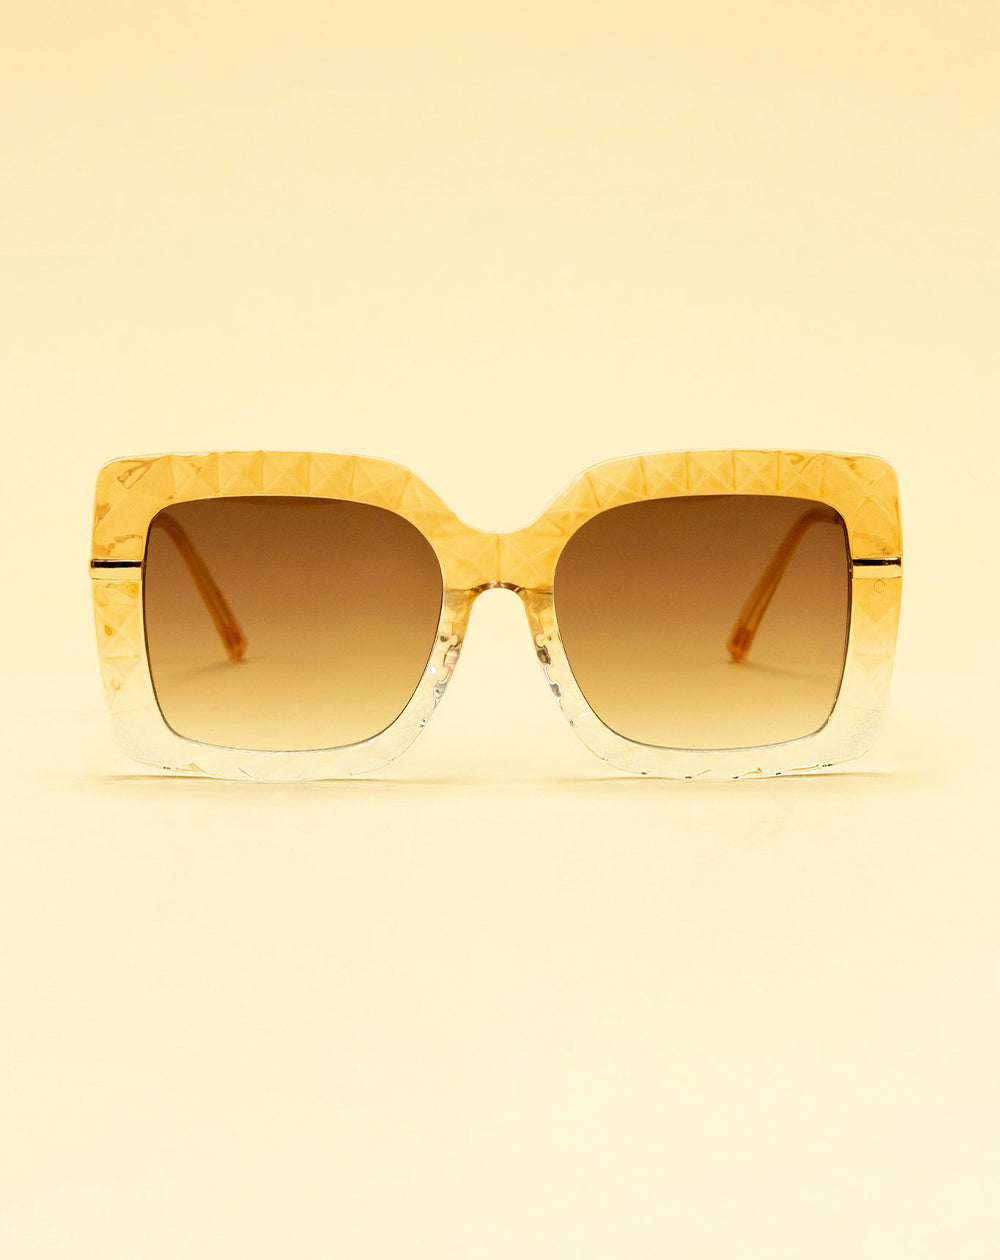 Powder HAY1 - Hayley Nude Sunglasses